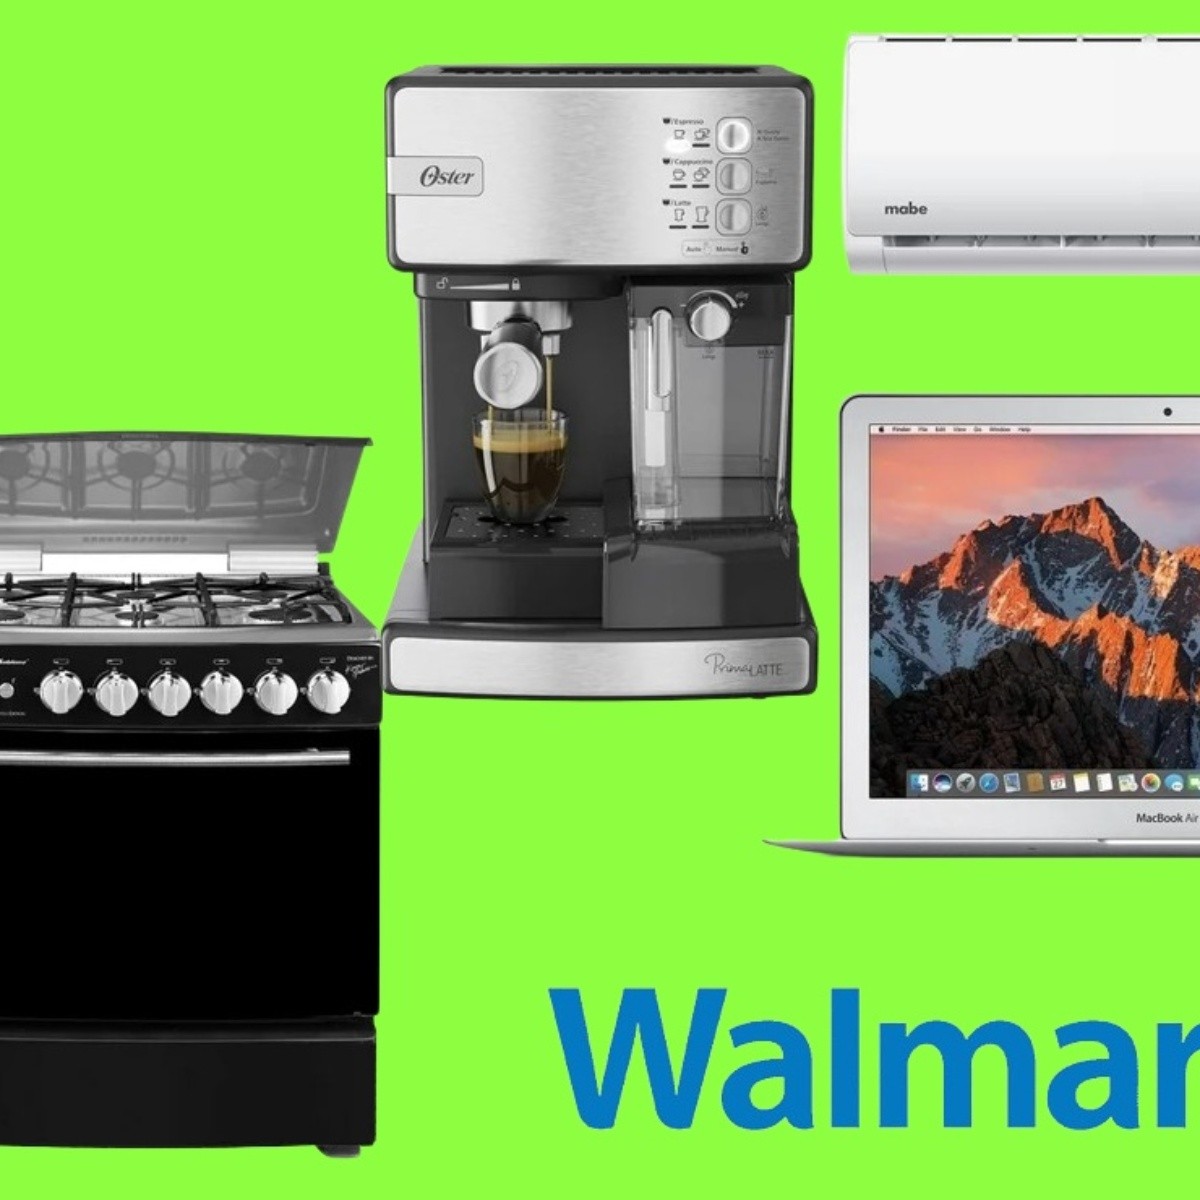 precios outlet en walmart: aire acondicionado, cafetera, centro de lavado, estufa y más | precios